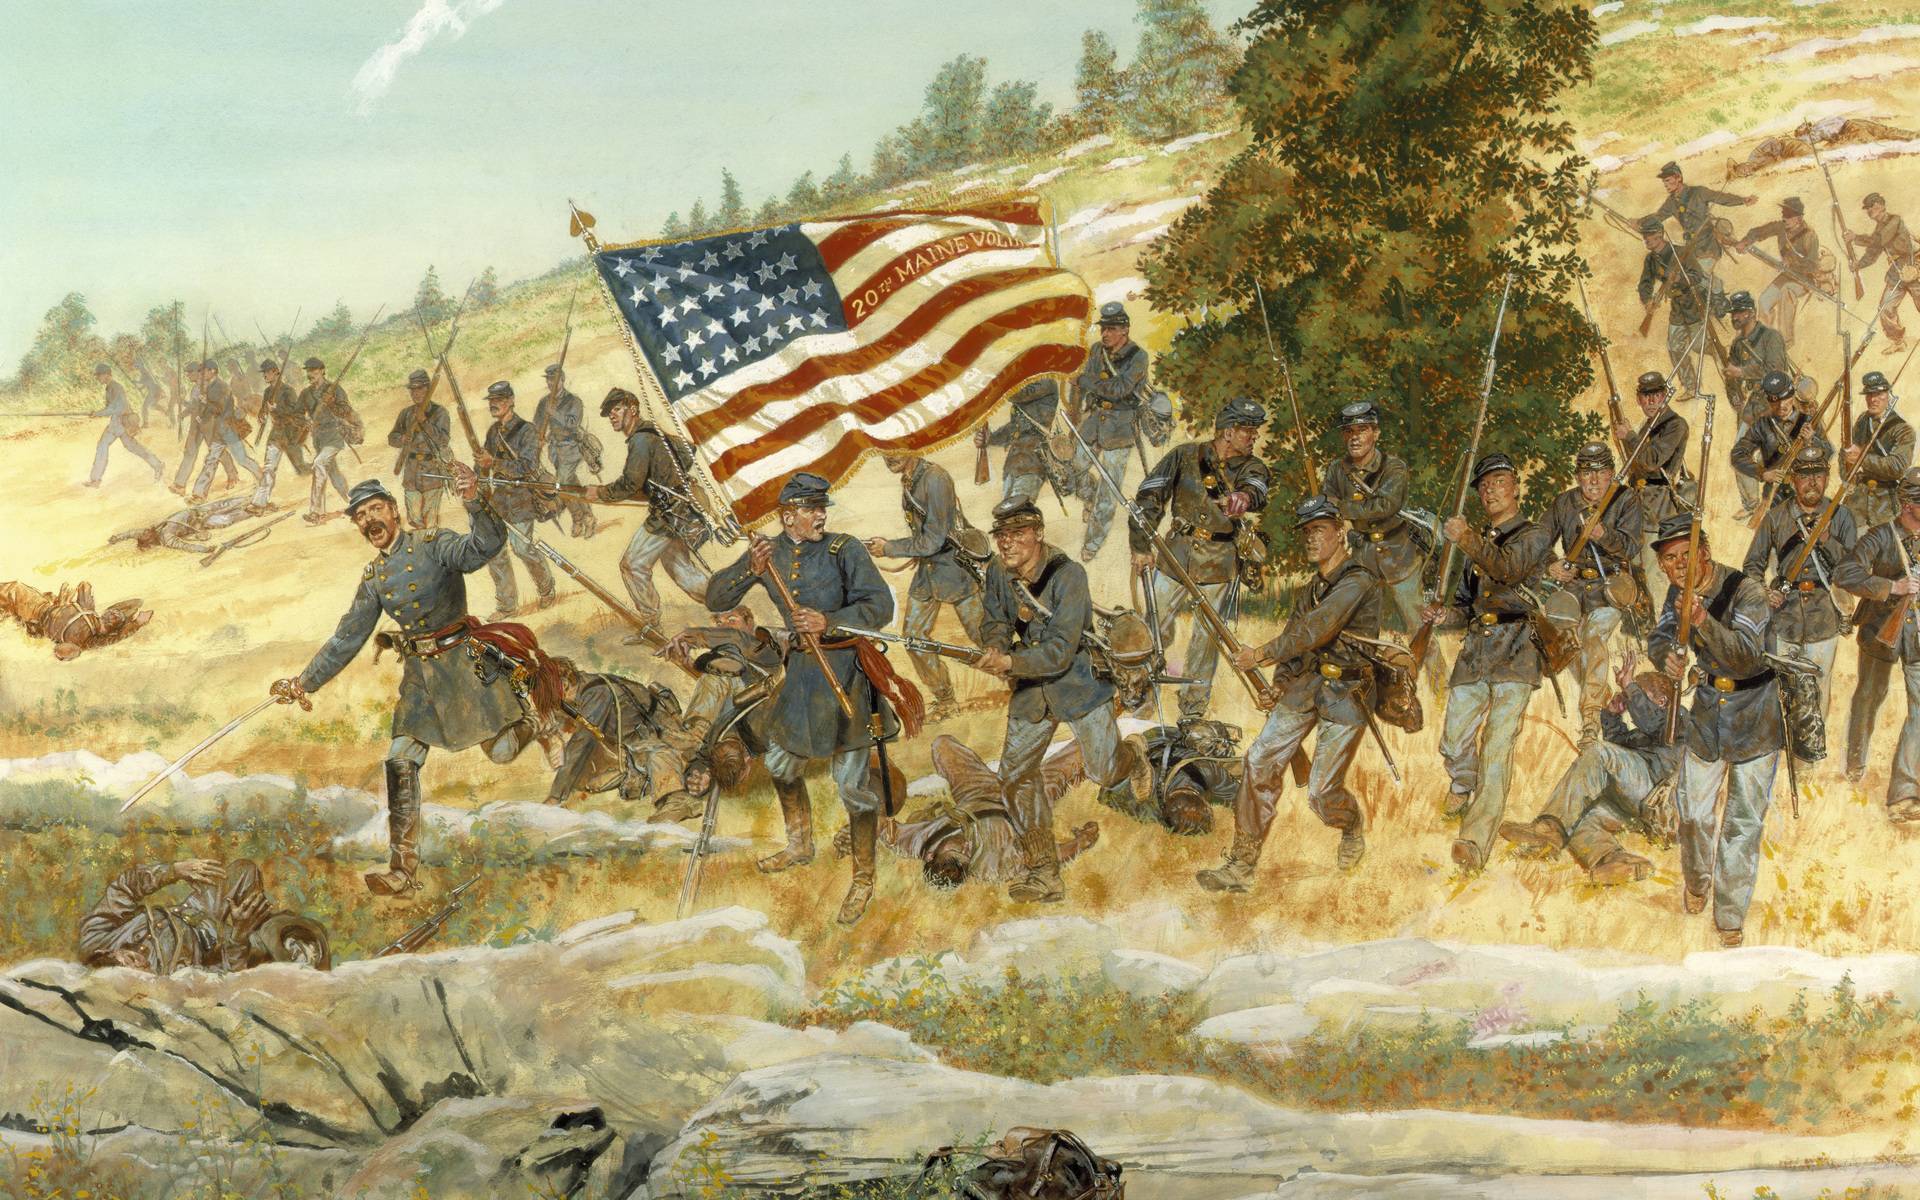 American Civil War Wallpaper